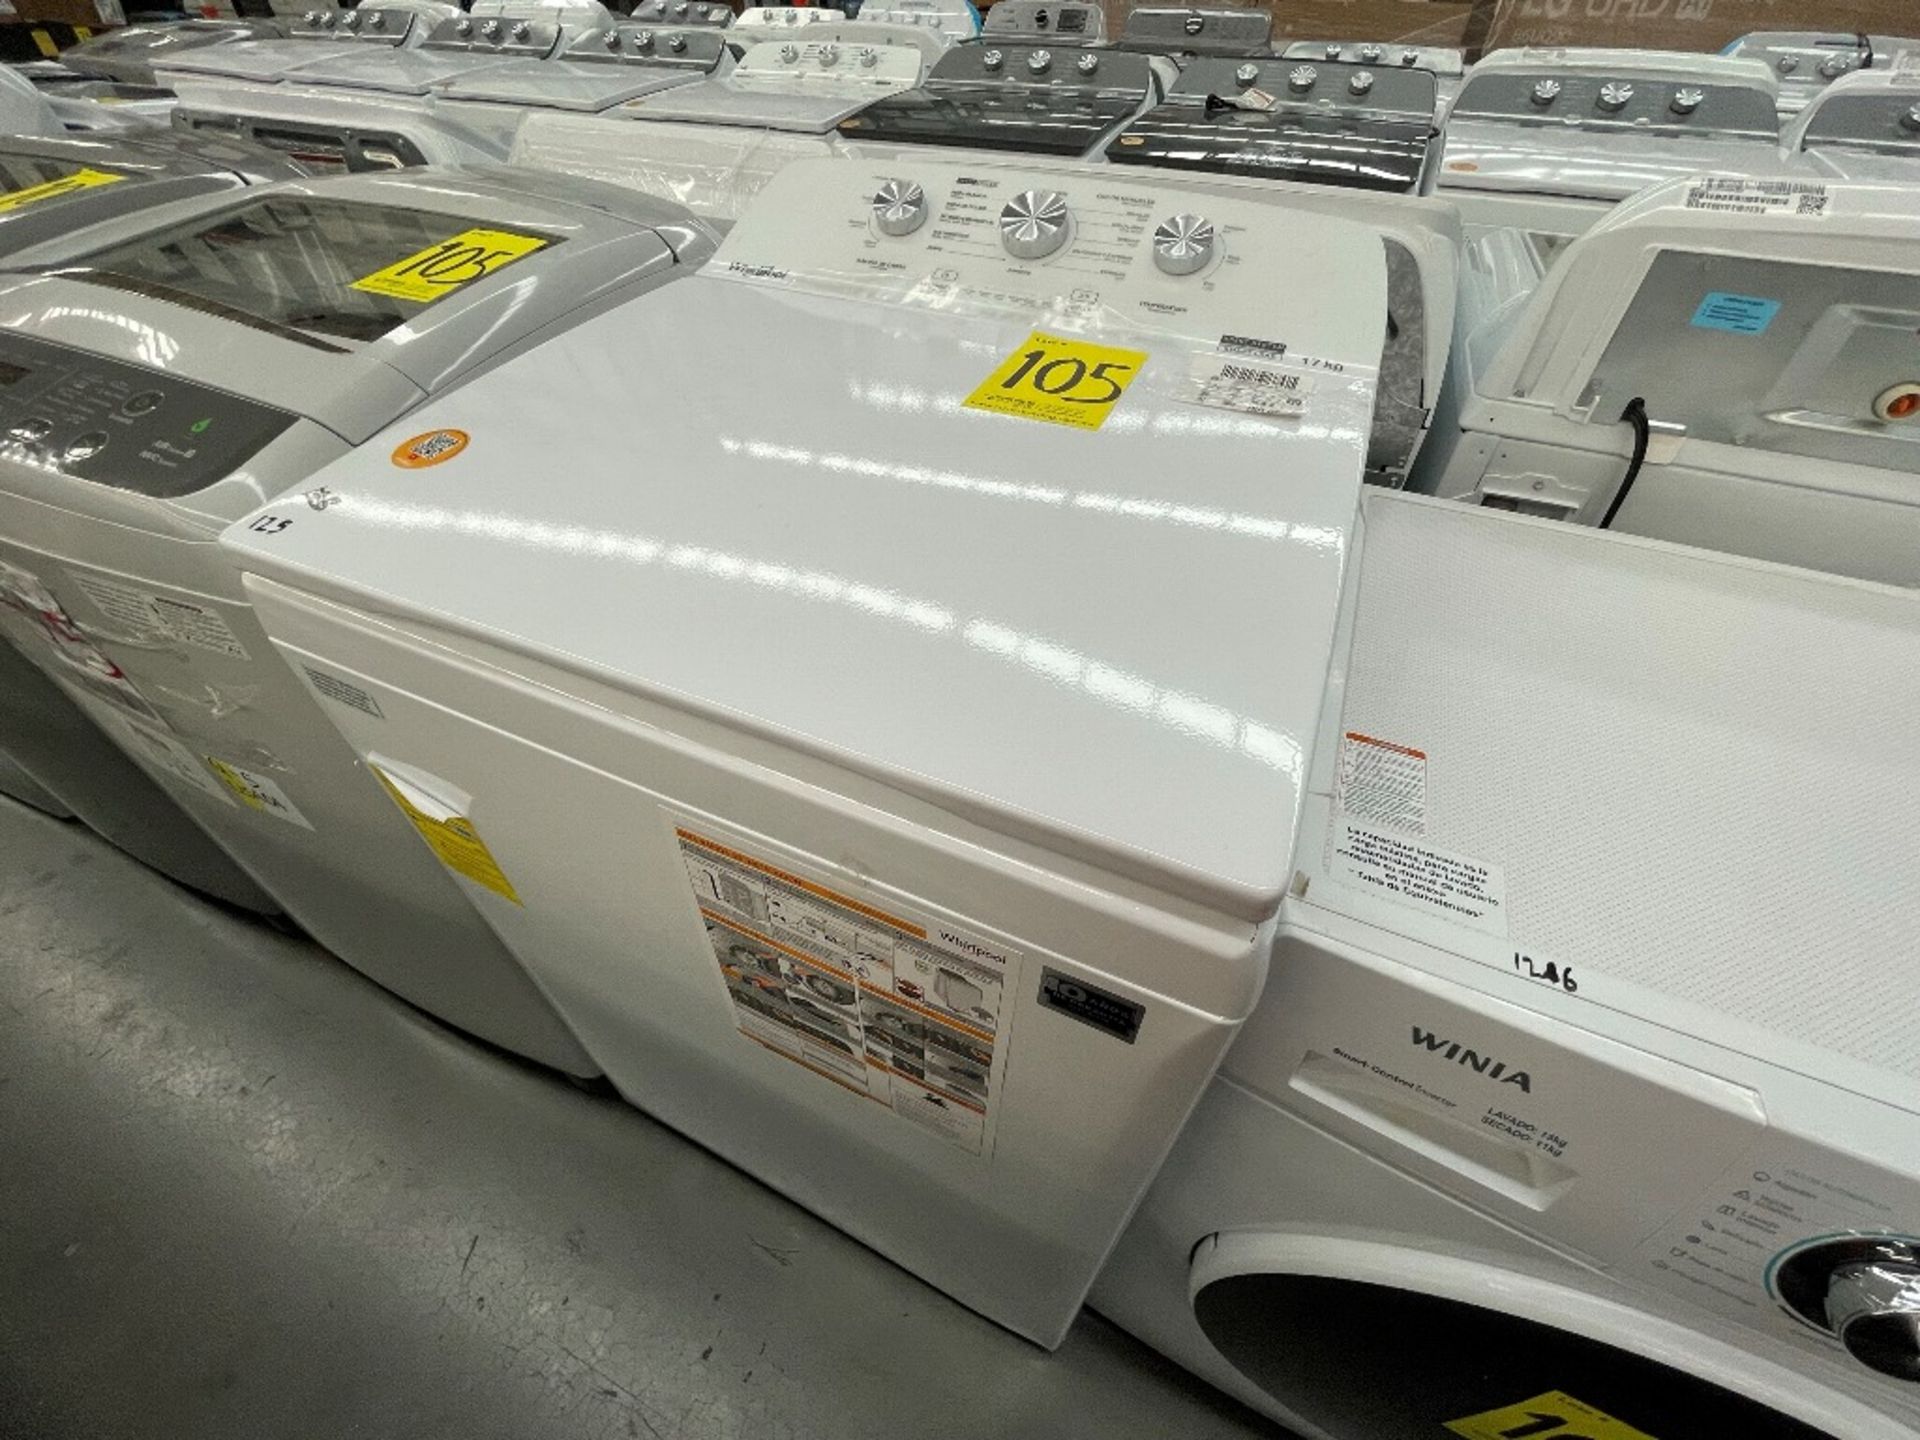 Lote de 2 Lavadoras contiene: 1 lavadora de 19 KG, Marca WINIA, Modelo WHF19F3YY2AH, Serie 801284, - Image 6 of 10